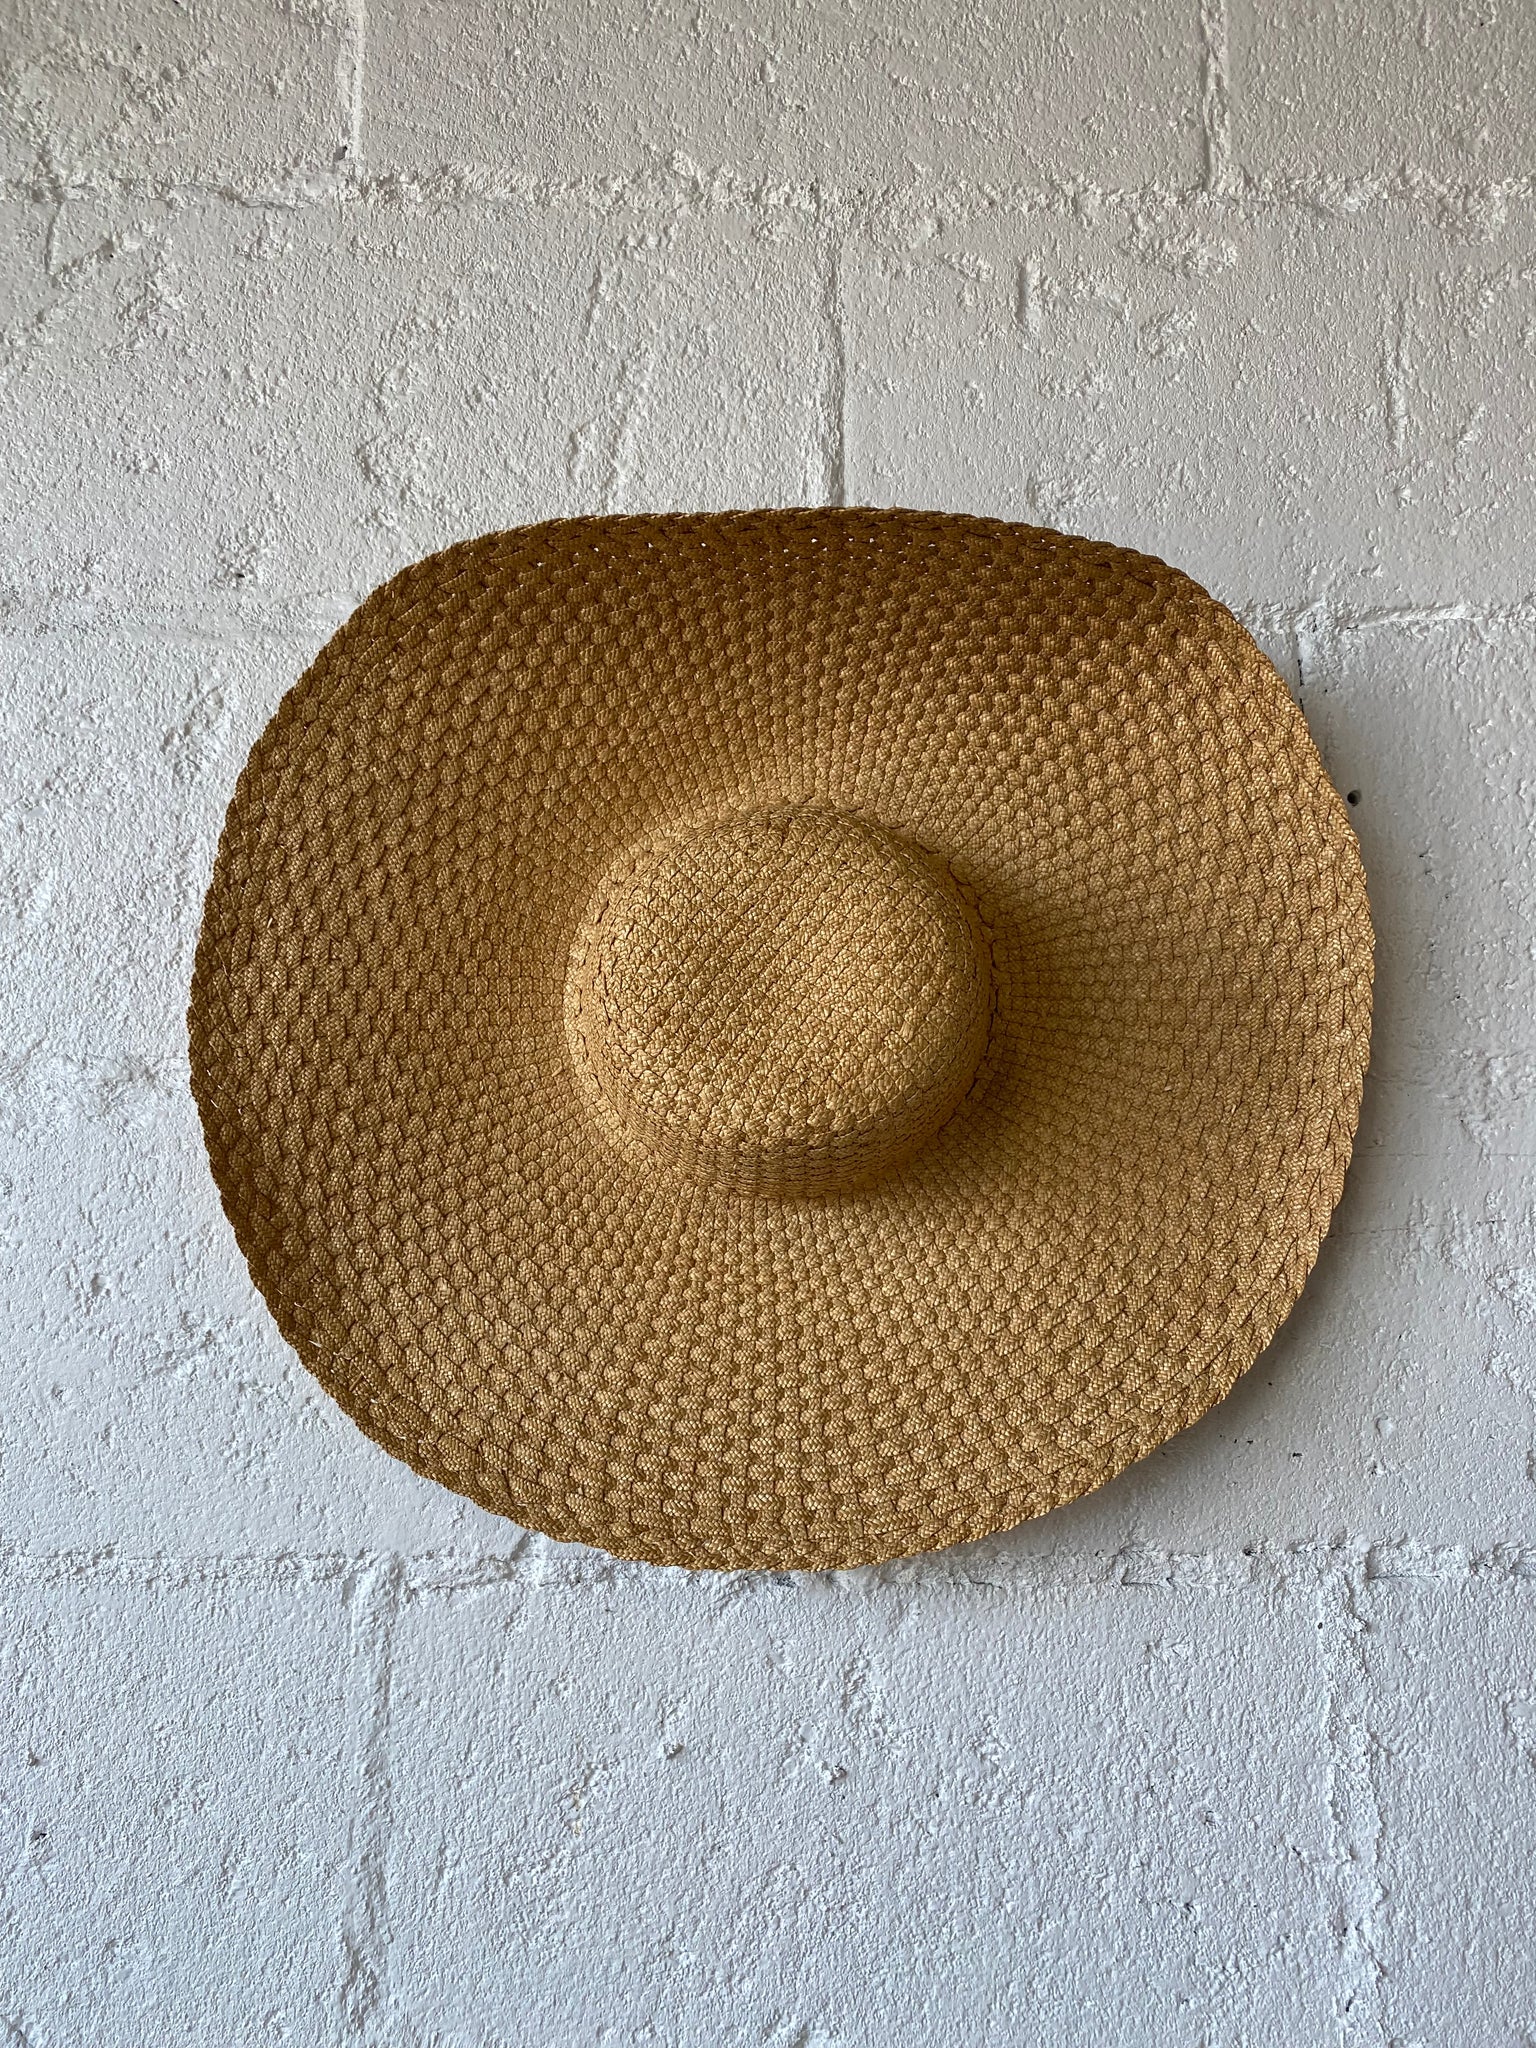 Large Brim Woven Beach/Garden Hat